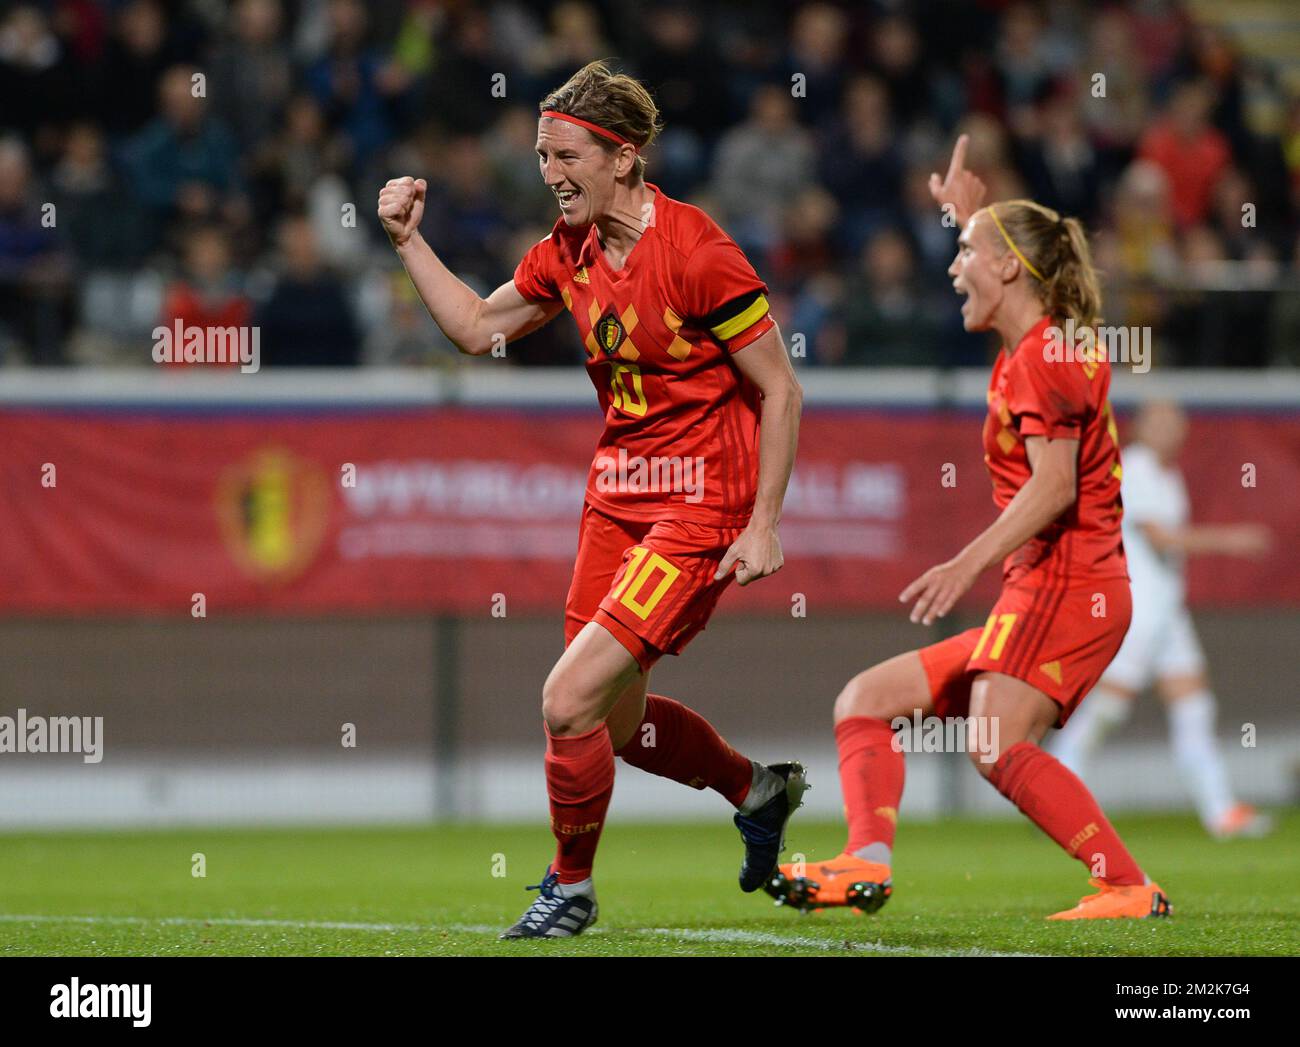 Aline Zeler, de Belgique, célèbre lors d'un match de football entre l'équipe nationale belge les flammes rouges et la Suisse, le vendredi 05 octobre 2018, à Louvain, la première partie des jeux de qualification pour les matchs de la coupe du monde 2019 pour femmes. BELGA PHOTO DAVID CATRY Banque D'Images